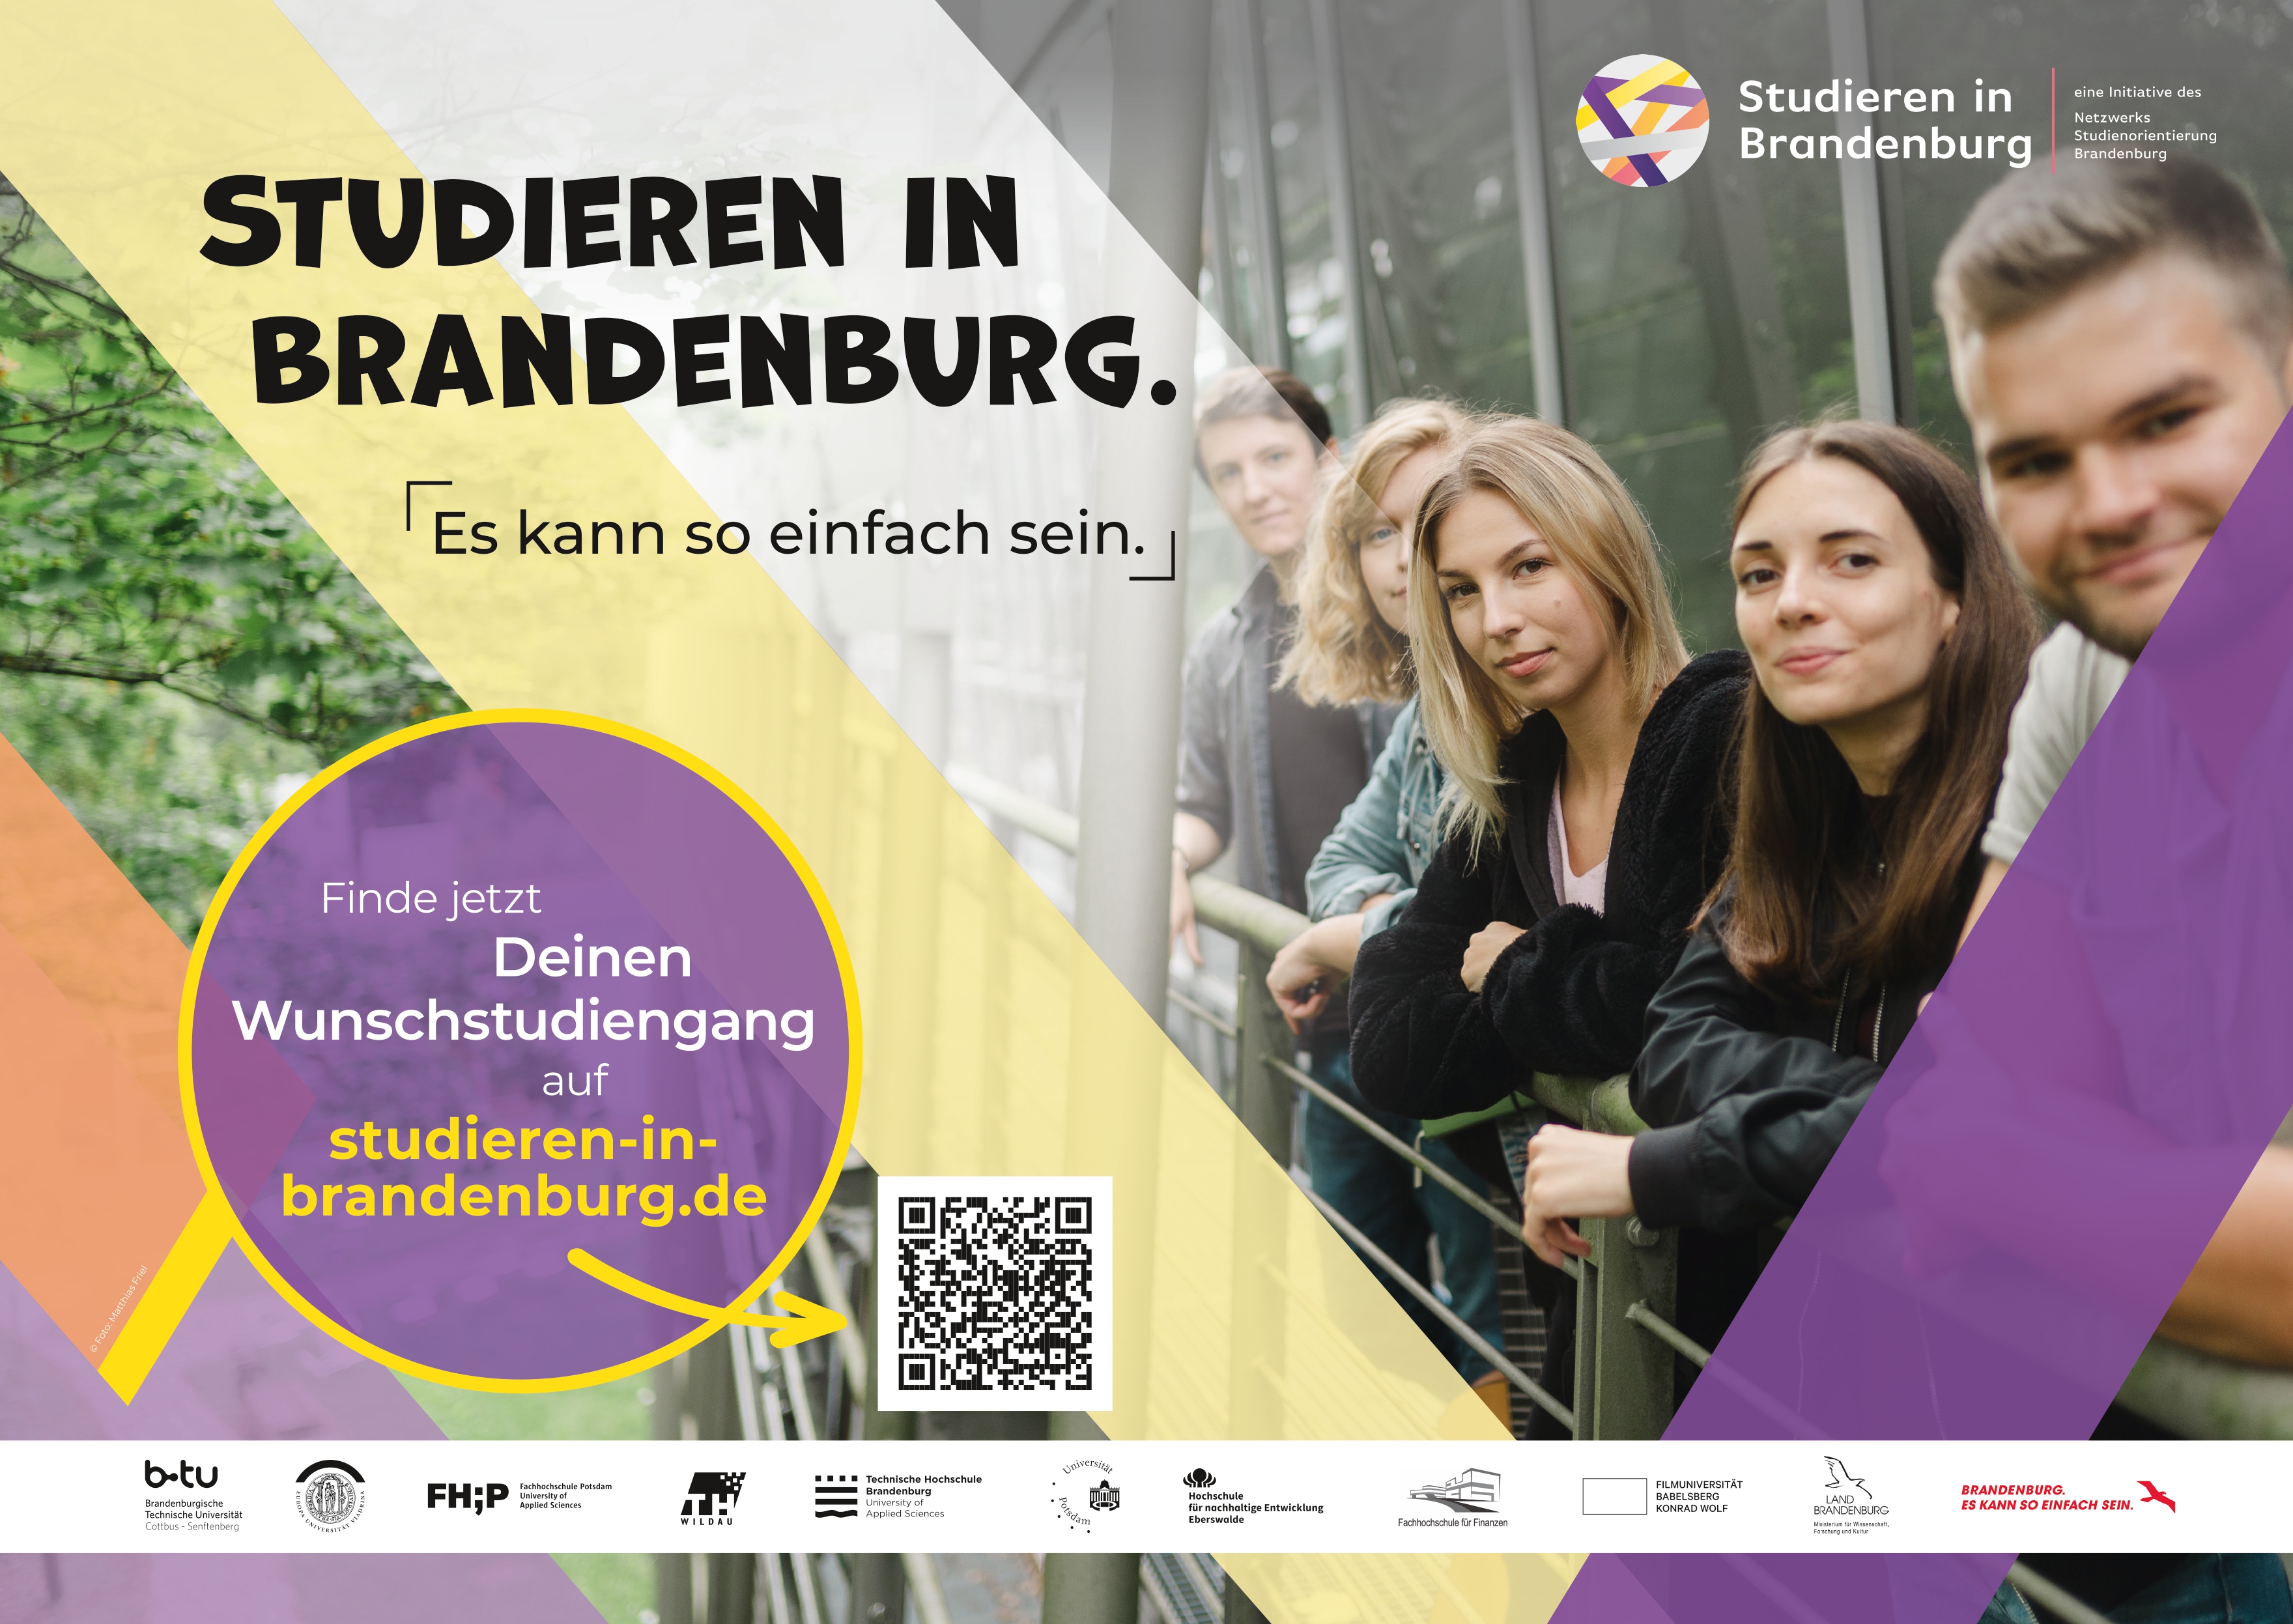 Studienorientierungsportal „Studieren in Brandenburg“ realisiert mit innovativen Tools den einfachen Weg ins Studium 